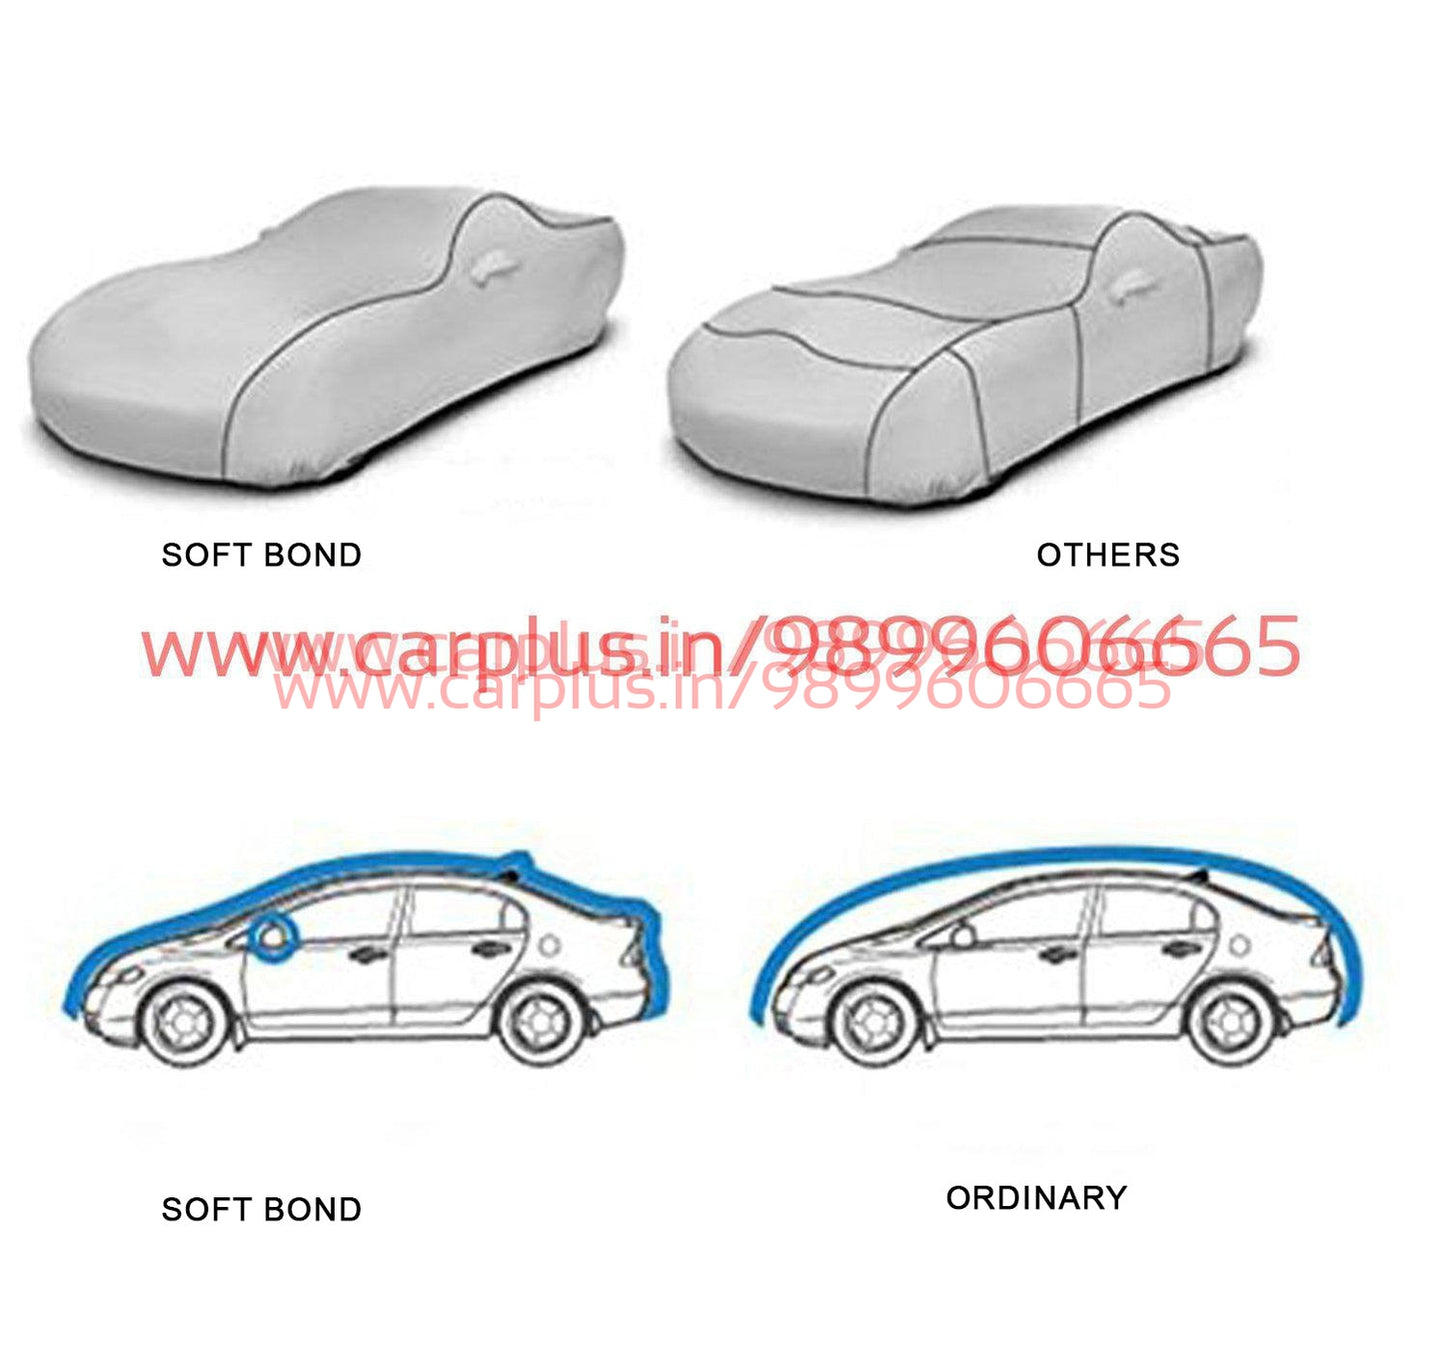 
                  
                    Soft bond body covers for Mercedes E Class(Navy Blue)-BODY COVER-SOFTBOND-CARPLUS
                  
                